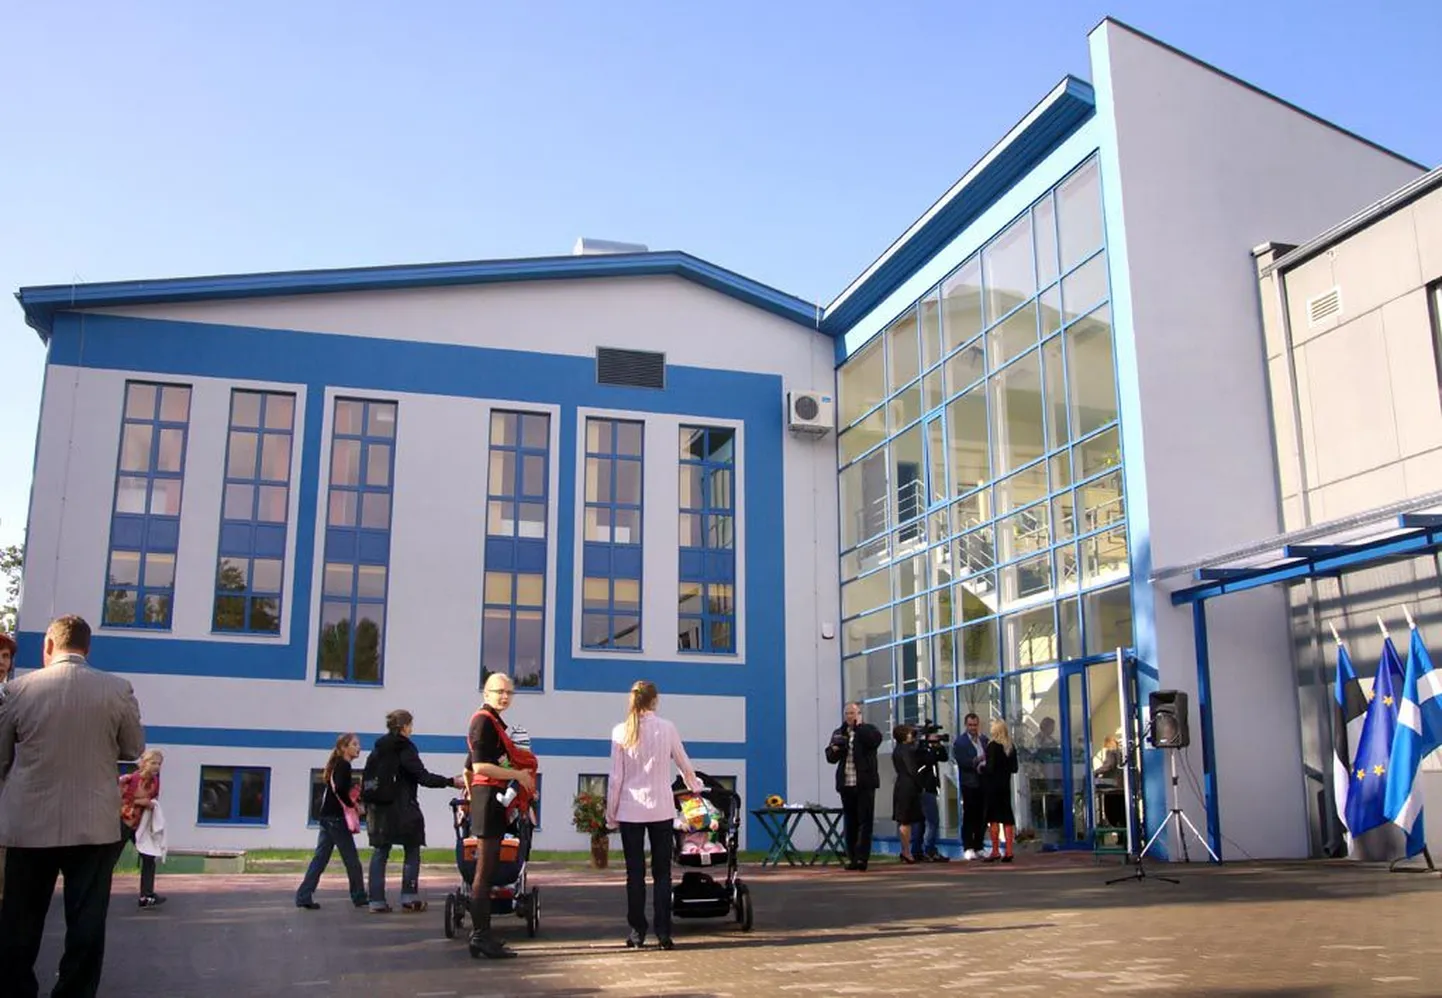 Ligi kuu tagasi avatud Pärnu tehnika- ja tööõpetusmaja sai kasutusloa alles eile.